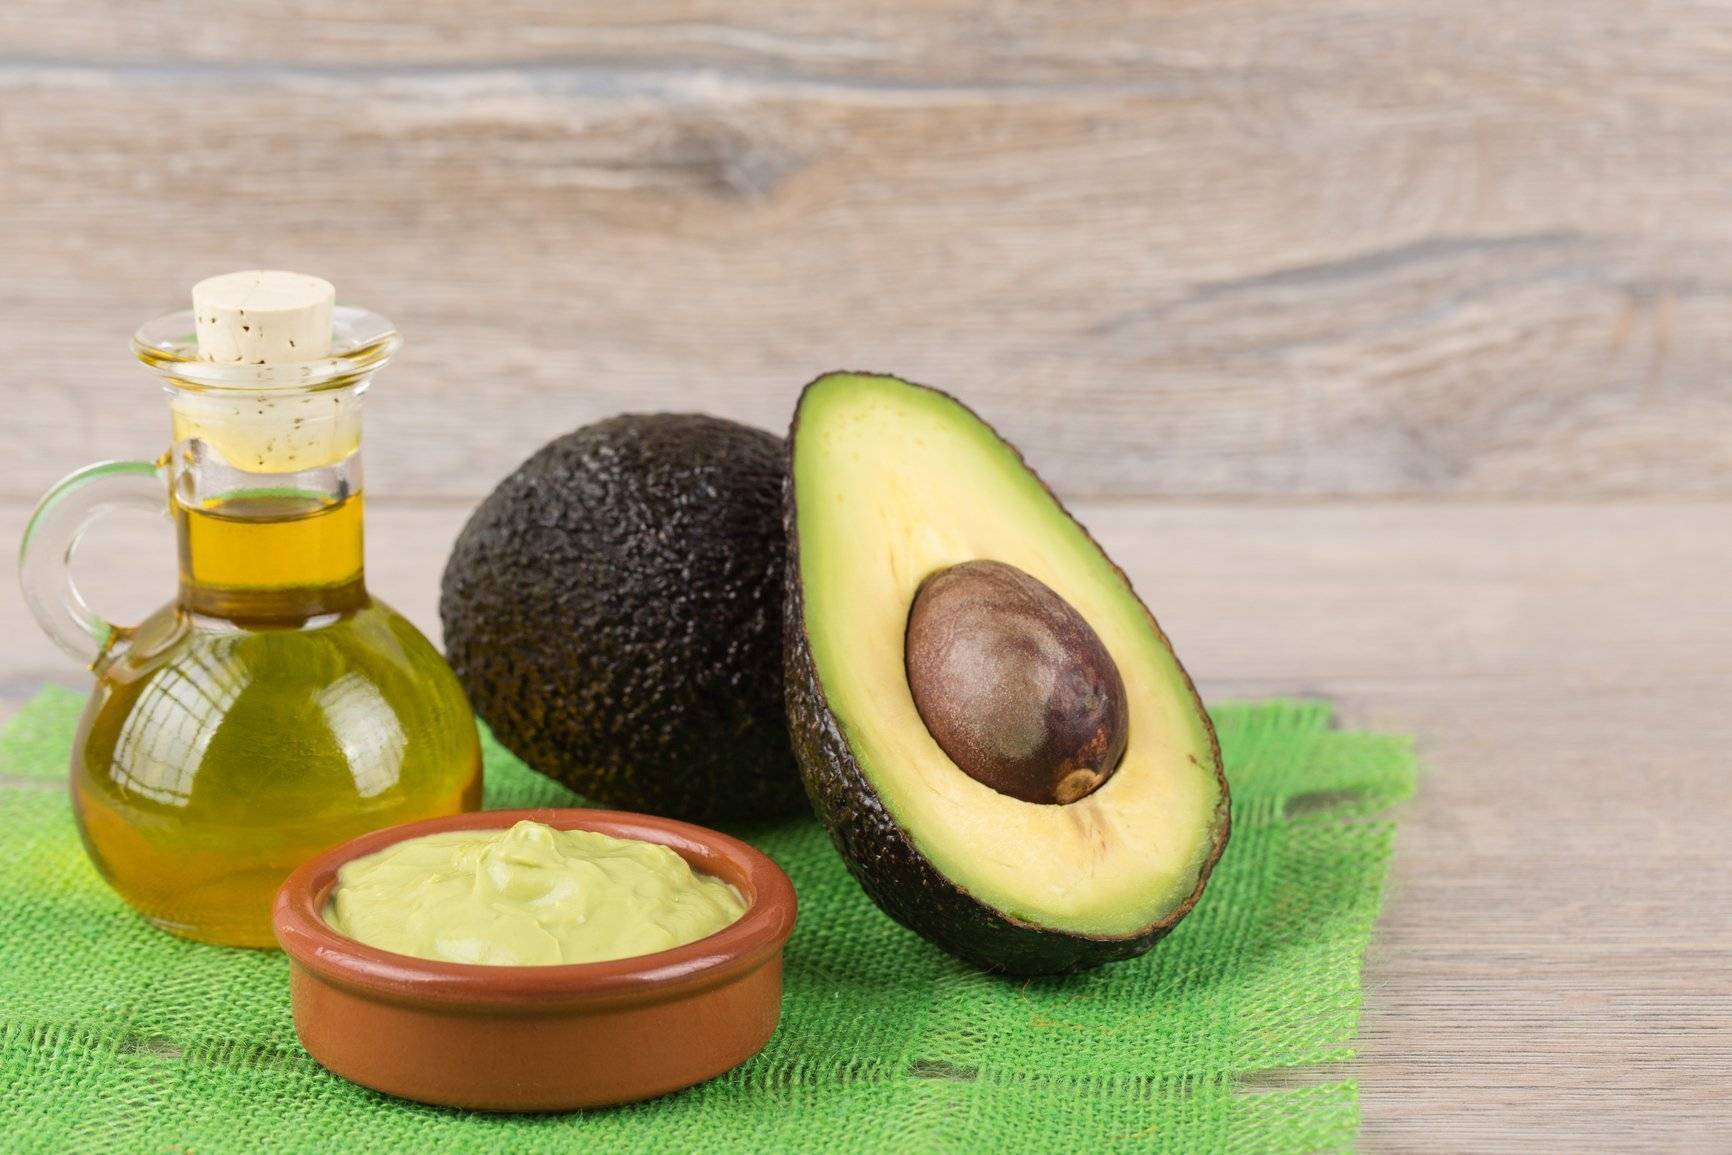 Авокадо - полезные свойства, противопоказания, калорийность, для похудения, рецепты, косточка и кожура